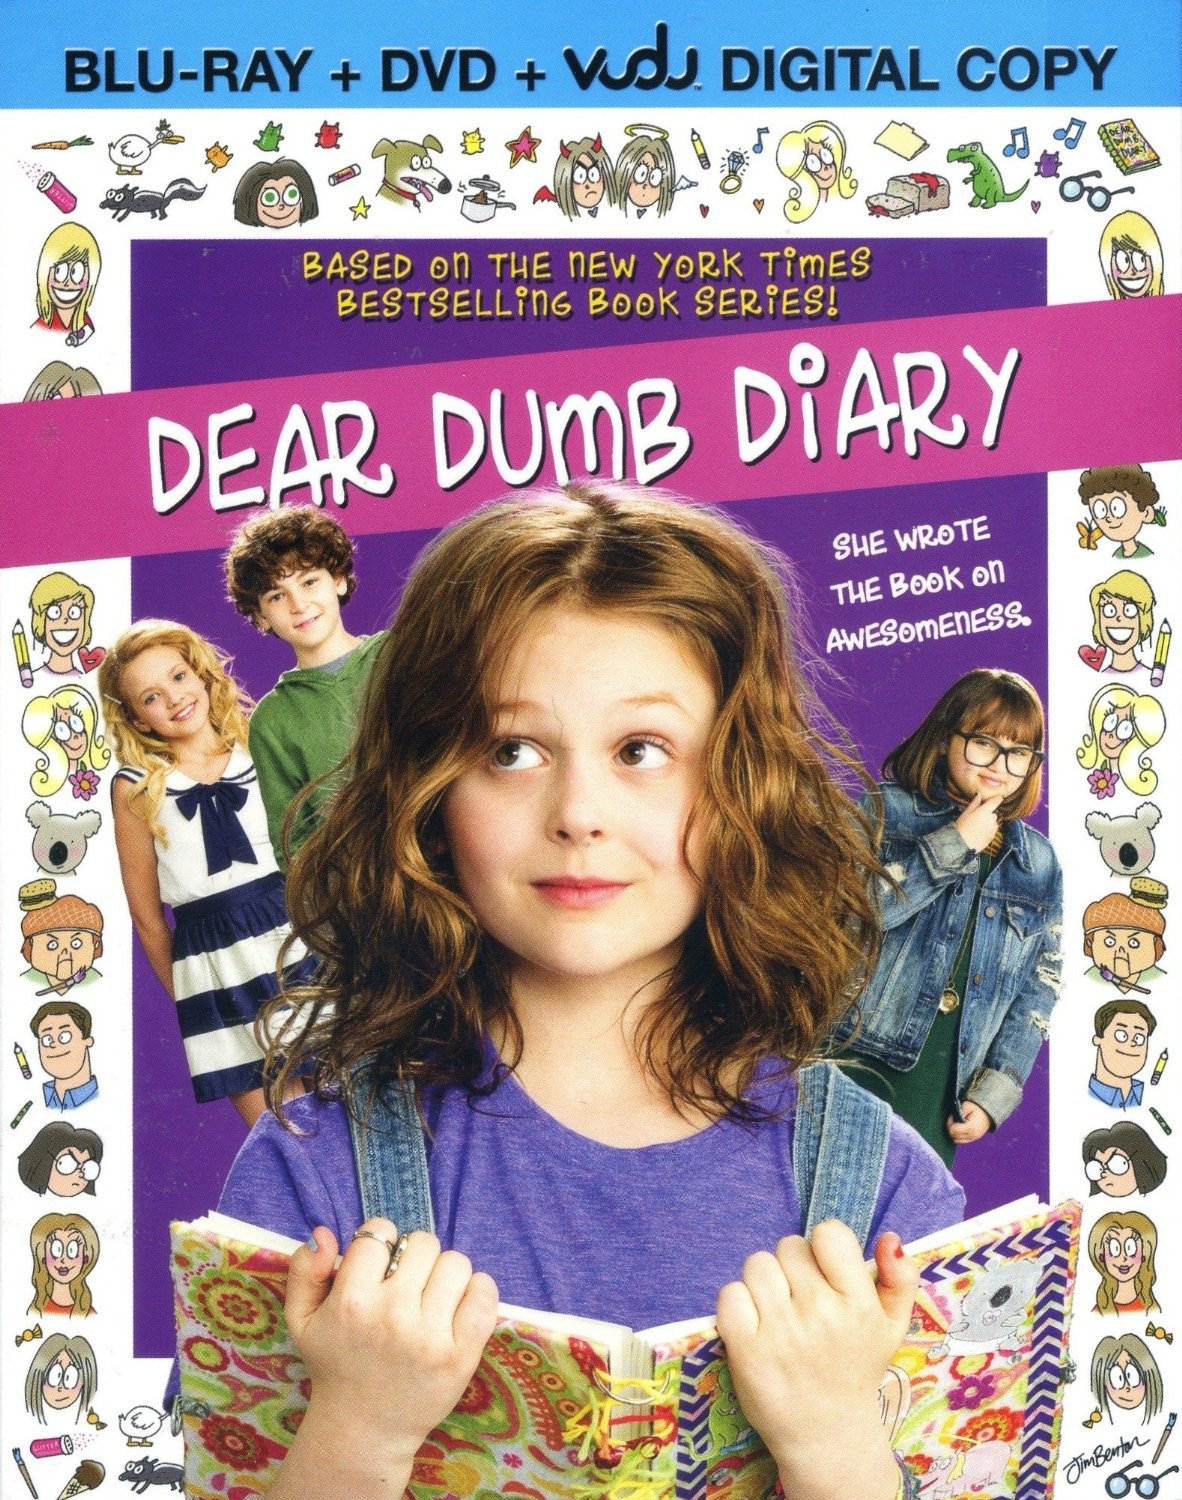 Dear Dumb Diary